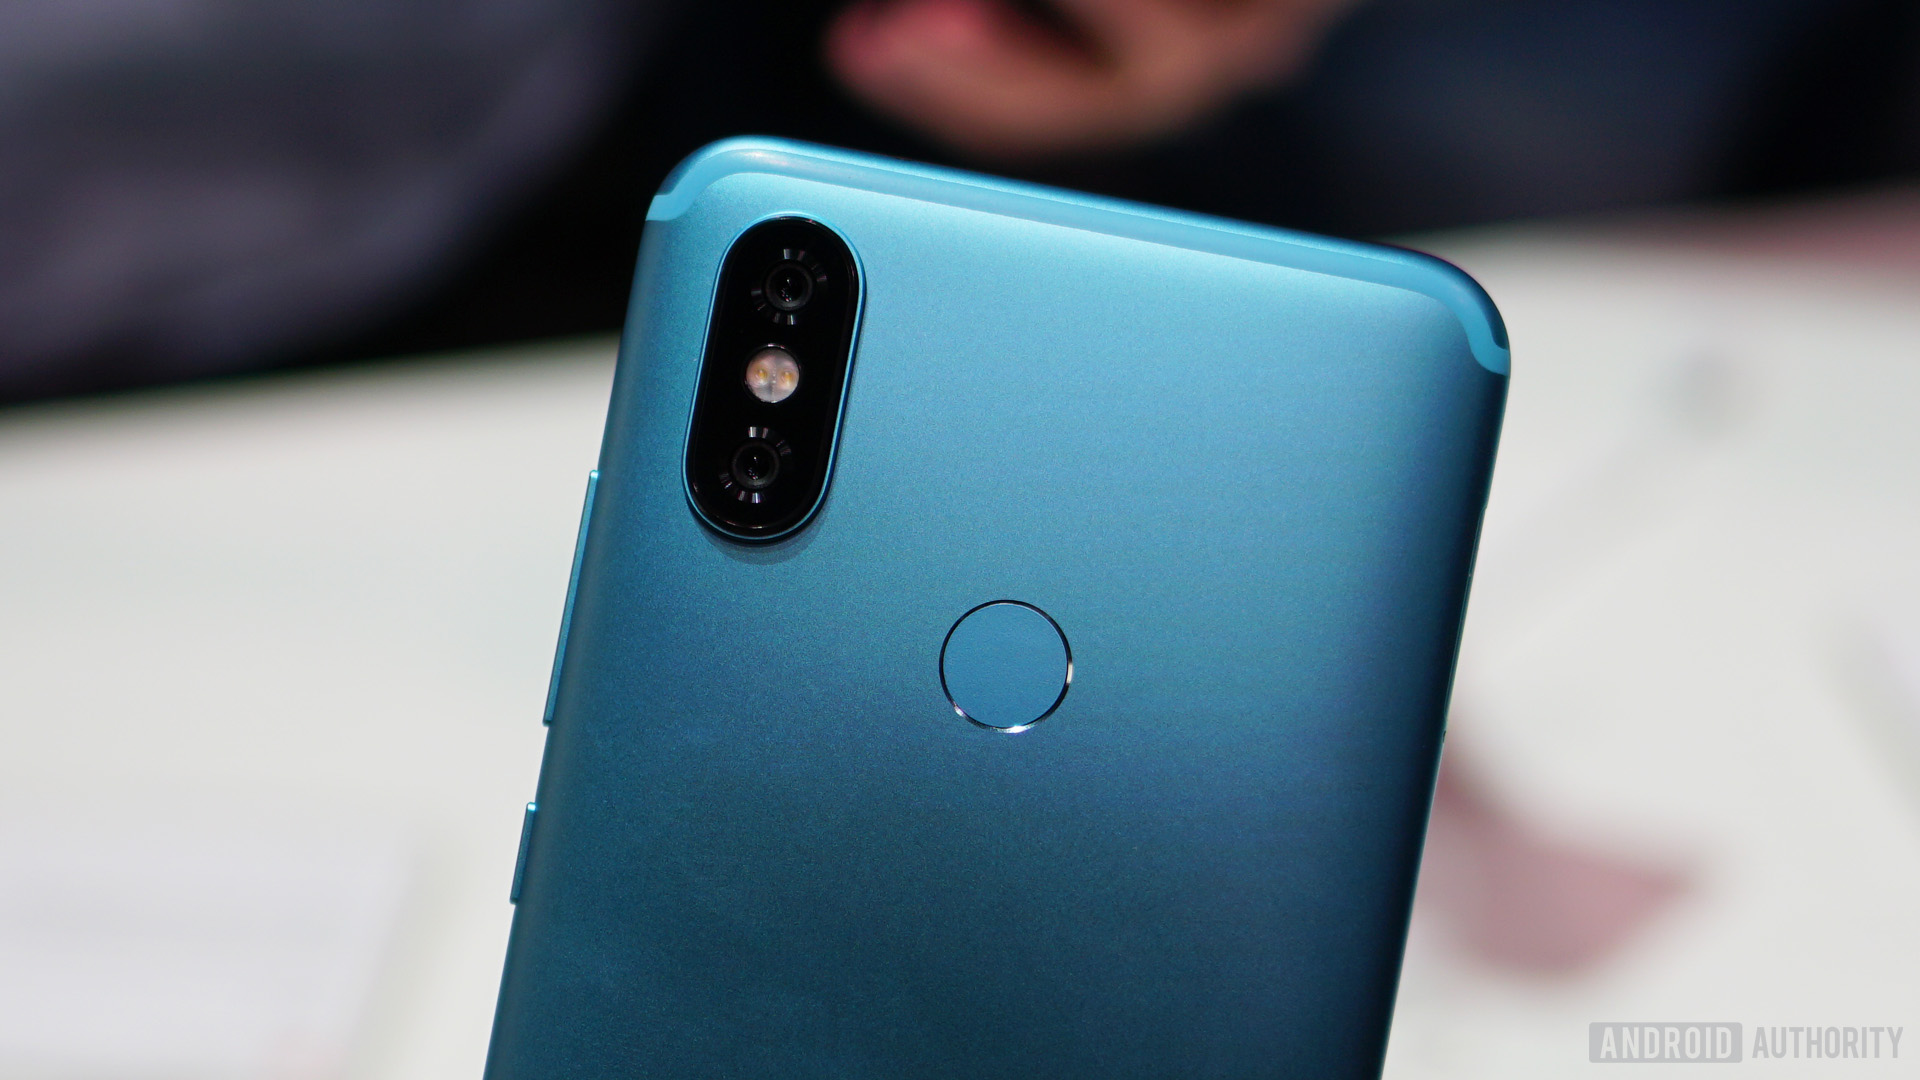 Xiaomi Mi A2 blue camera fingerprint sensor